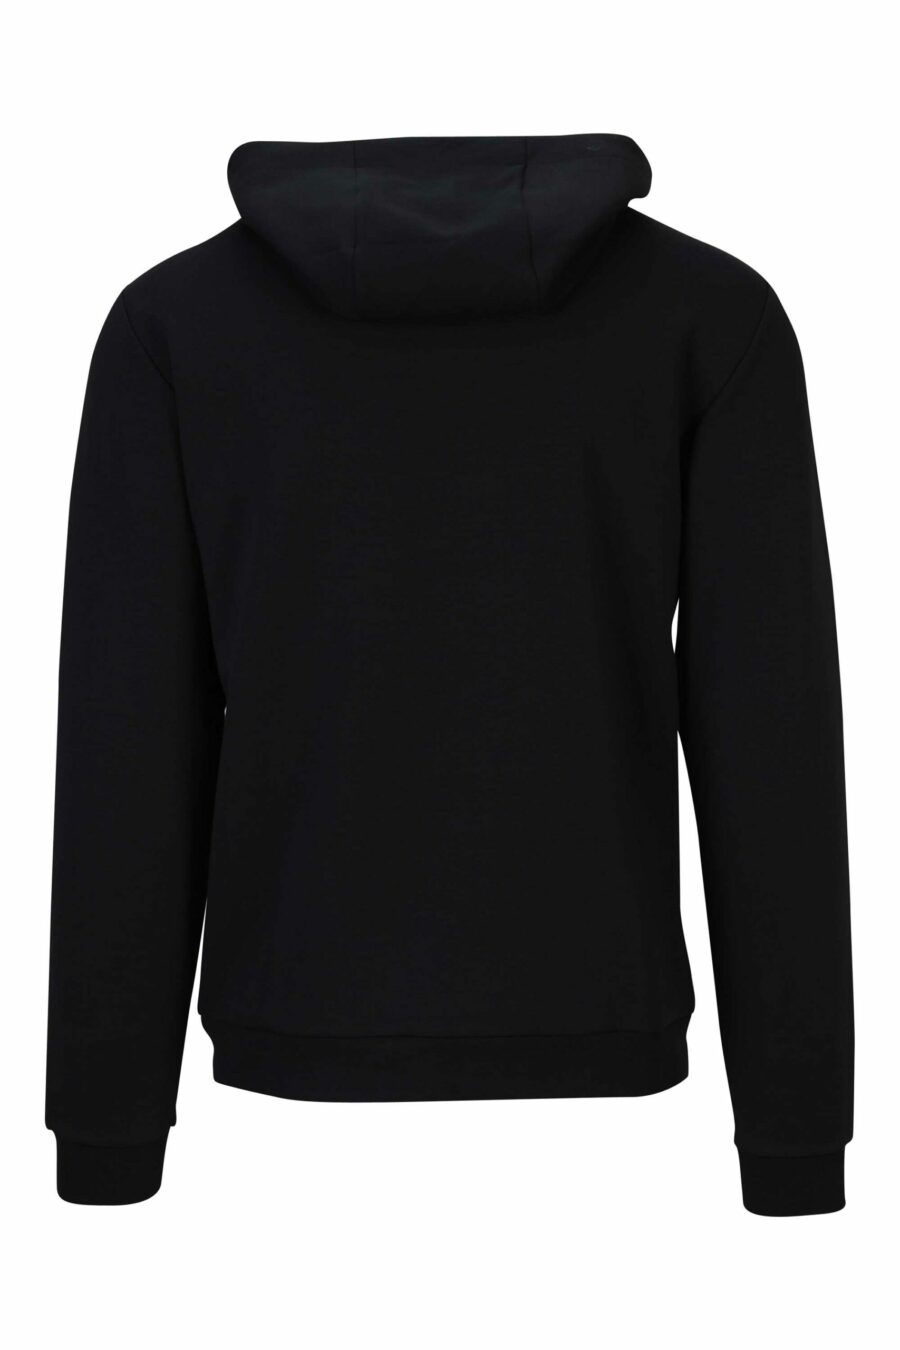 Schwarzes Kapuzensweatshirt mit Minilogue "lux identity" auf schwarzem Schild - 8058947471003 1 skaliert